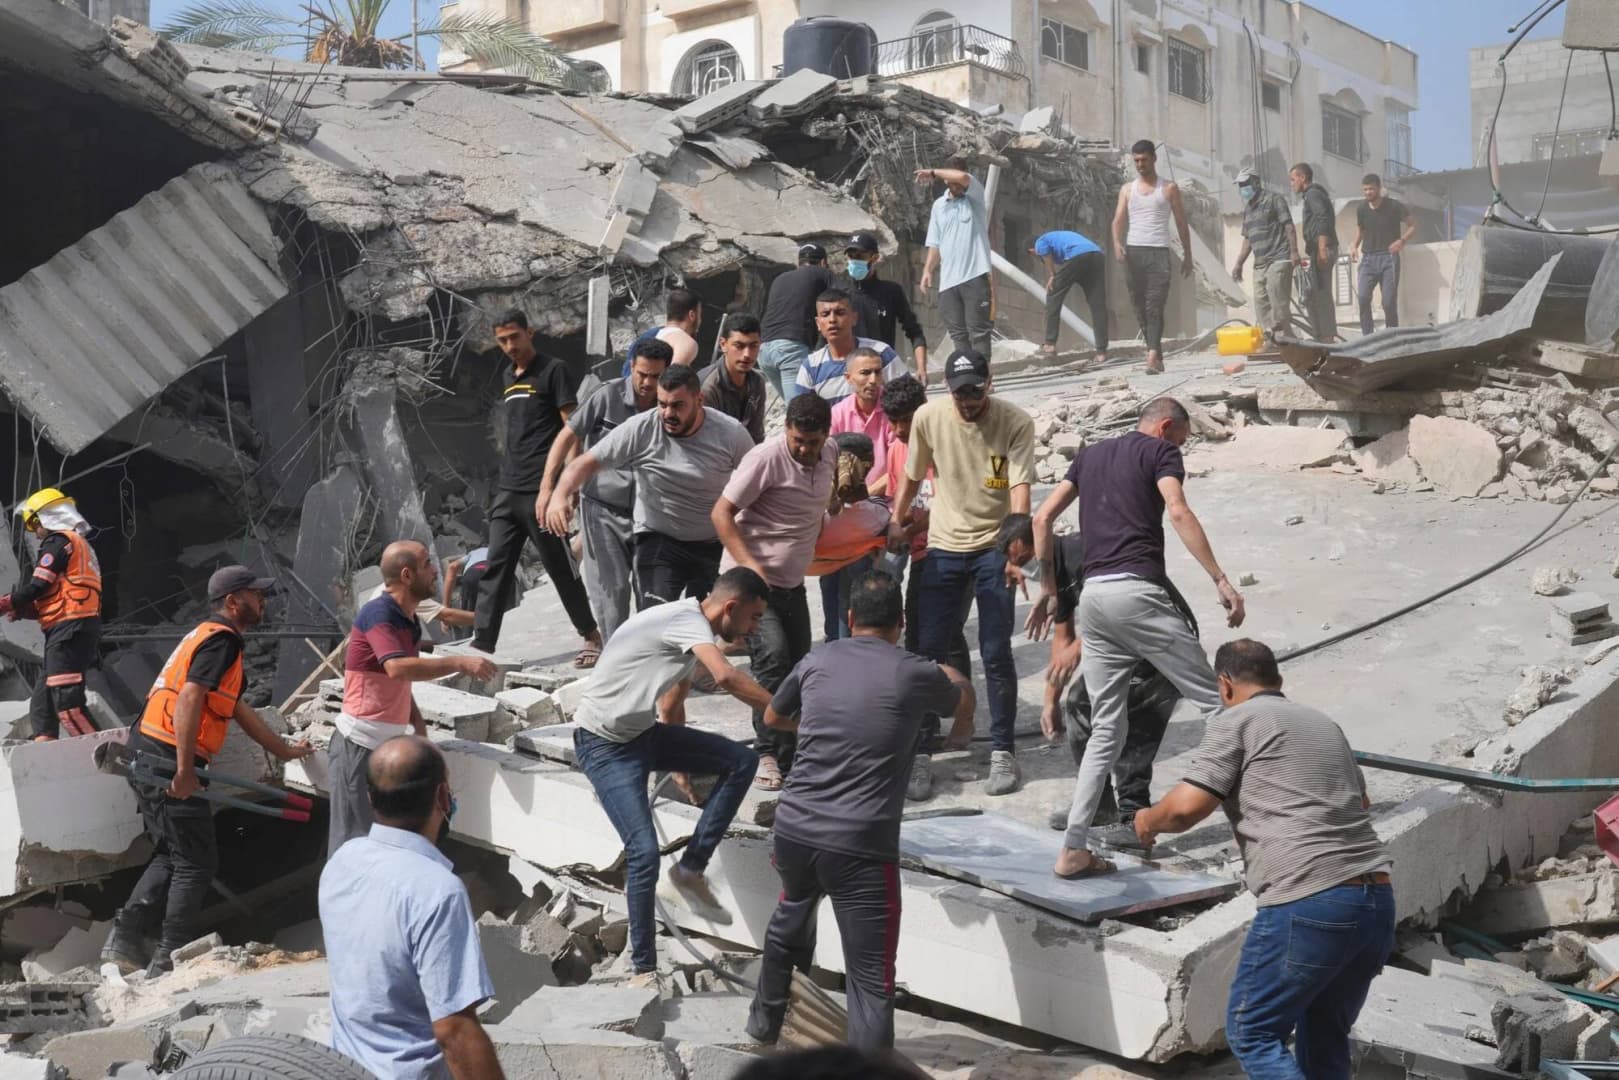 Gáza több milliárd dollárnyi nemzetközi segítségre szorul gazdasága helyreállításához